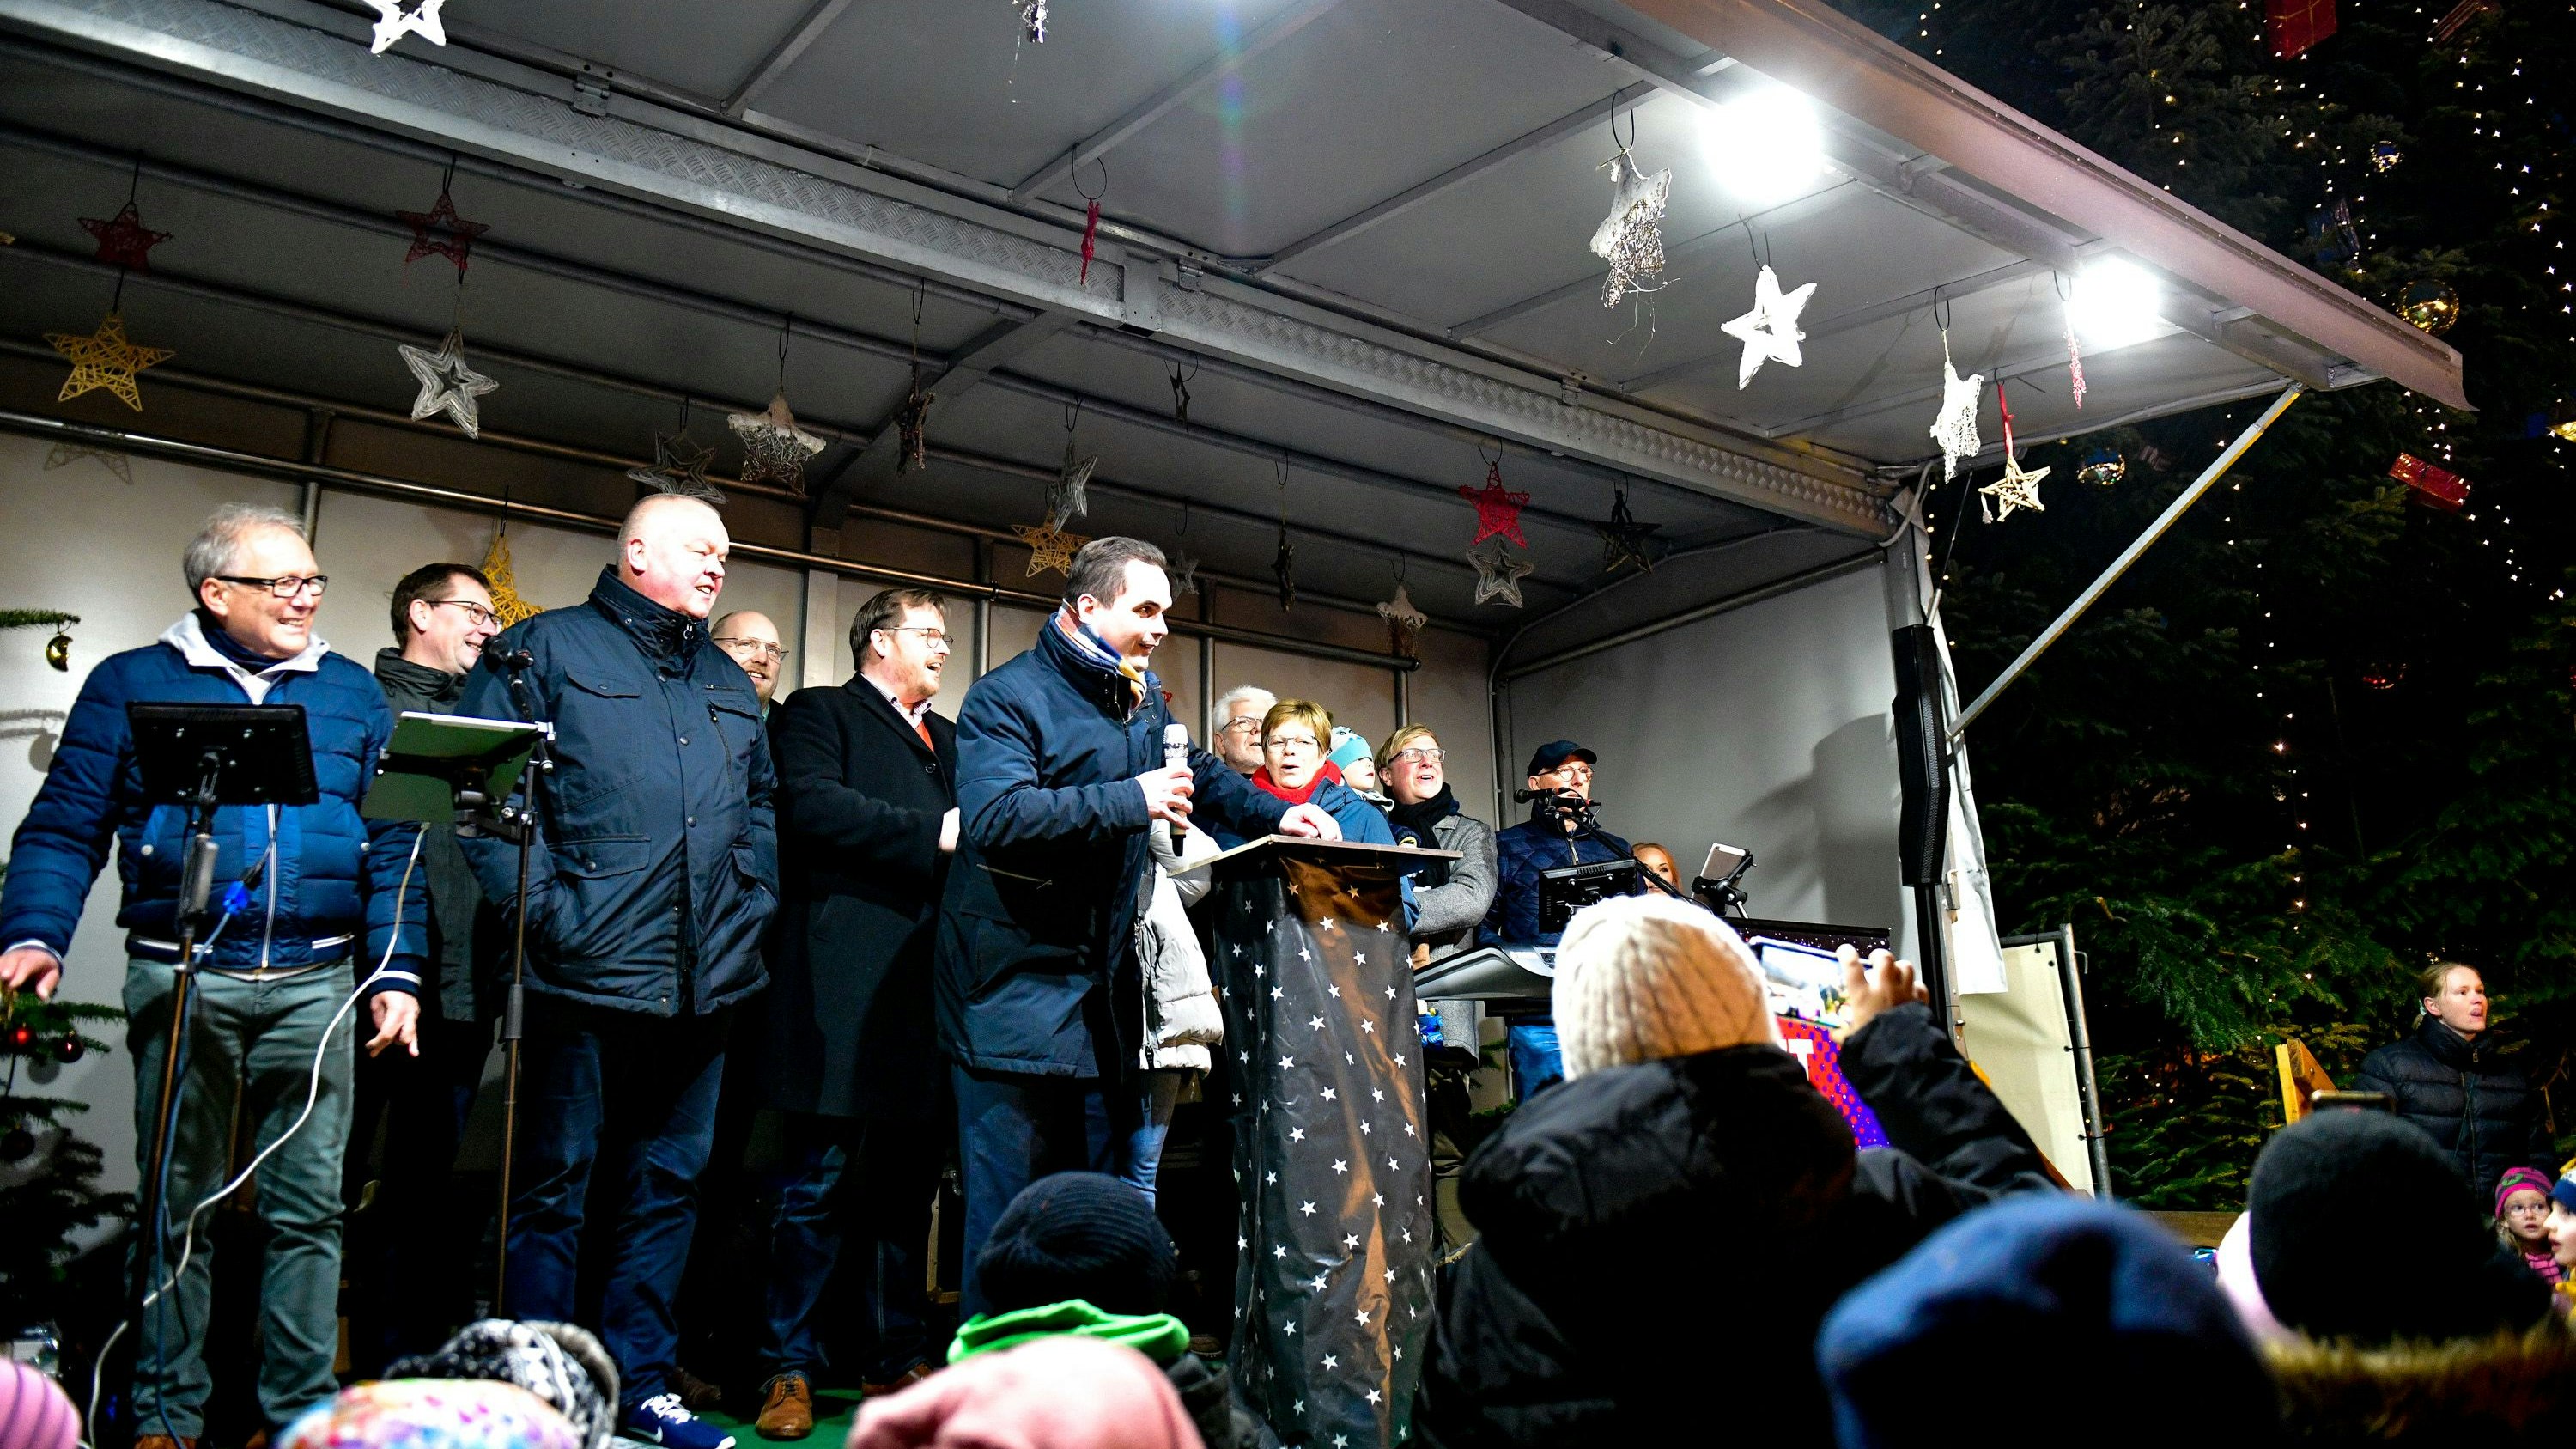 Licht an: Bürgermeister Kristian Kater und der Marktausschuss des Stadtrats haben den Weihnachtsmarkt offiziell eröffnet. Foto: Chowanietz